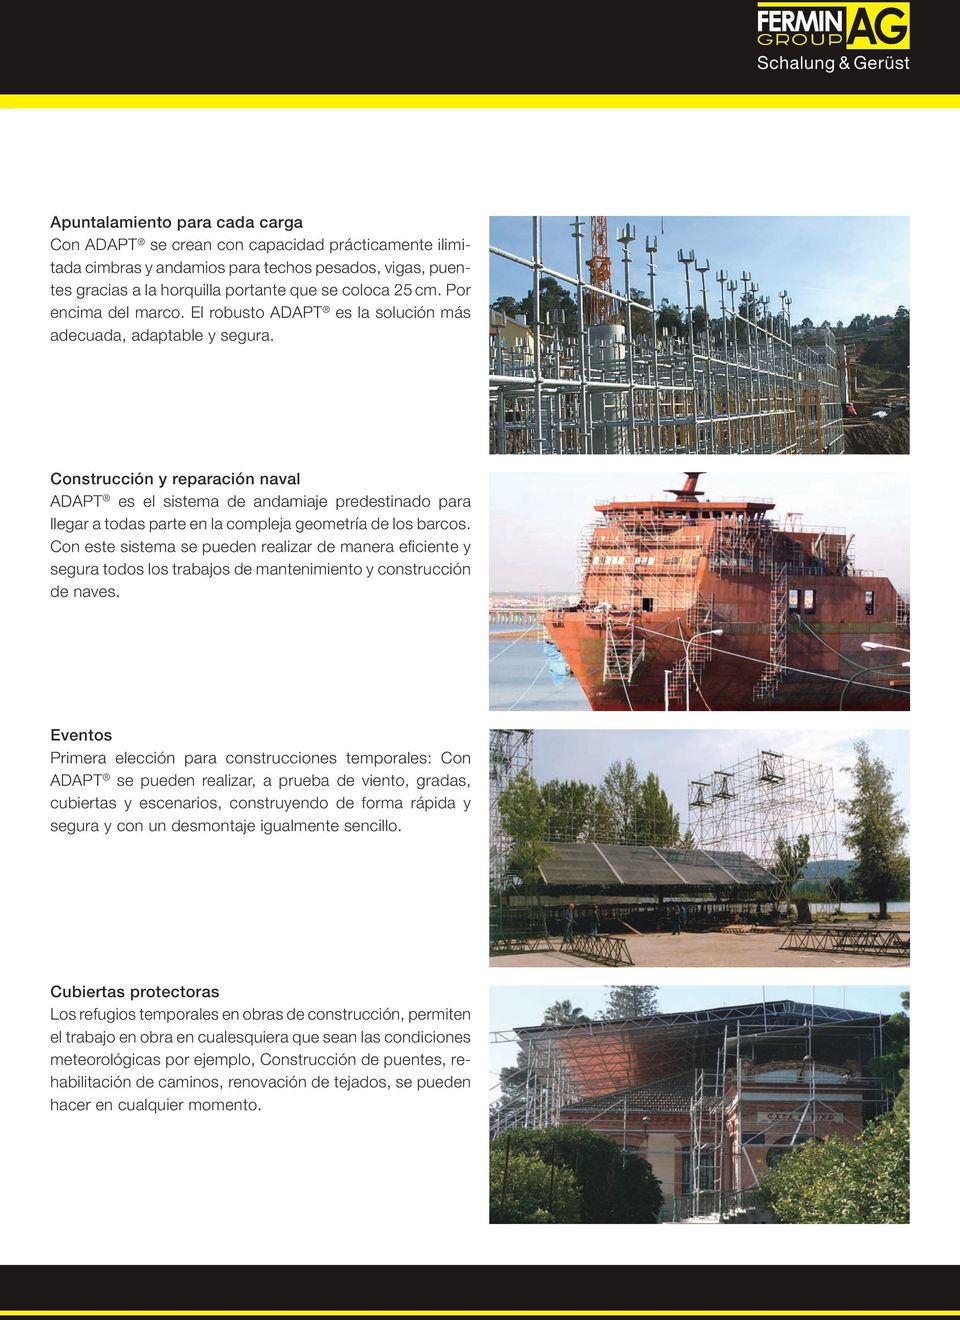 Construcción y reparación naval ADAPT es el sistema de andamiaje predestinado para llegar a todas parte en la compleja geometría de los barcos.